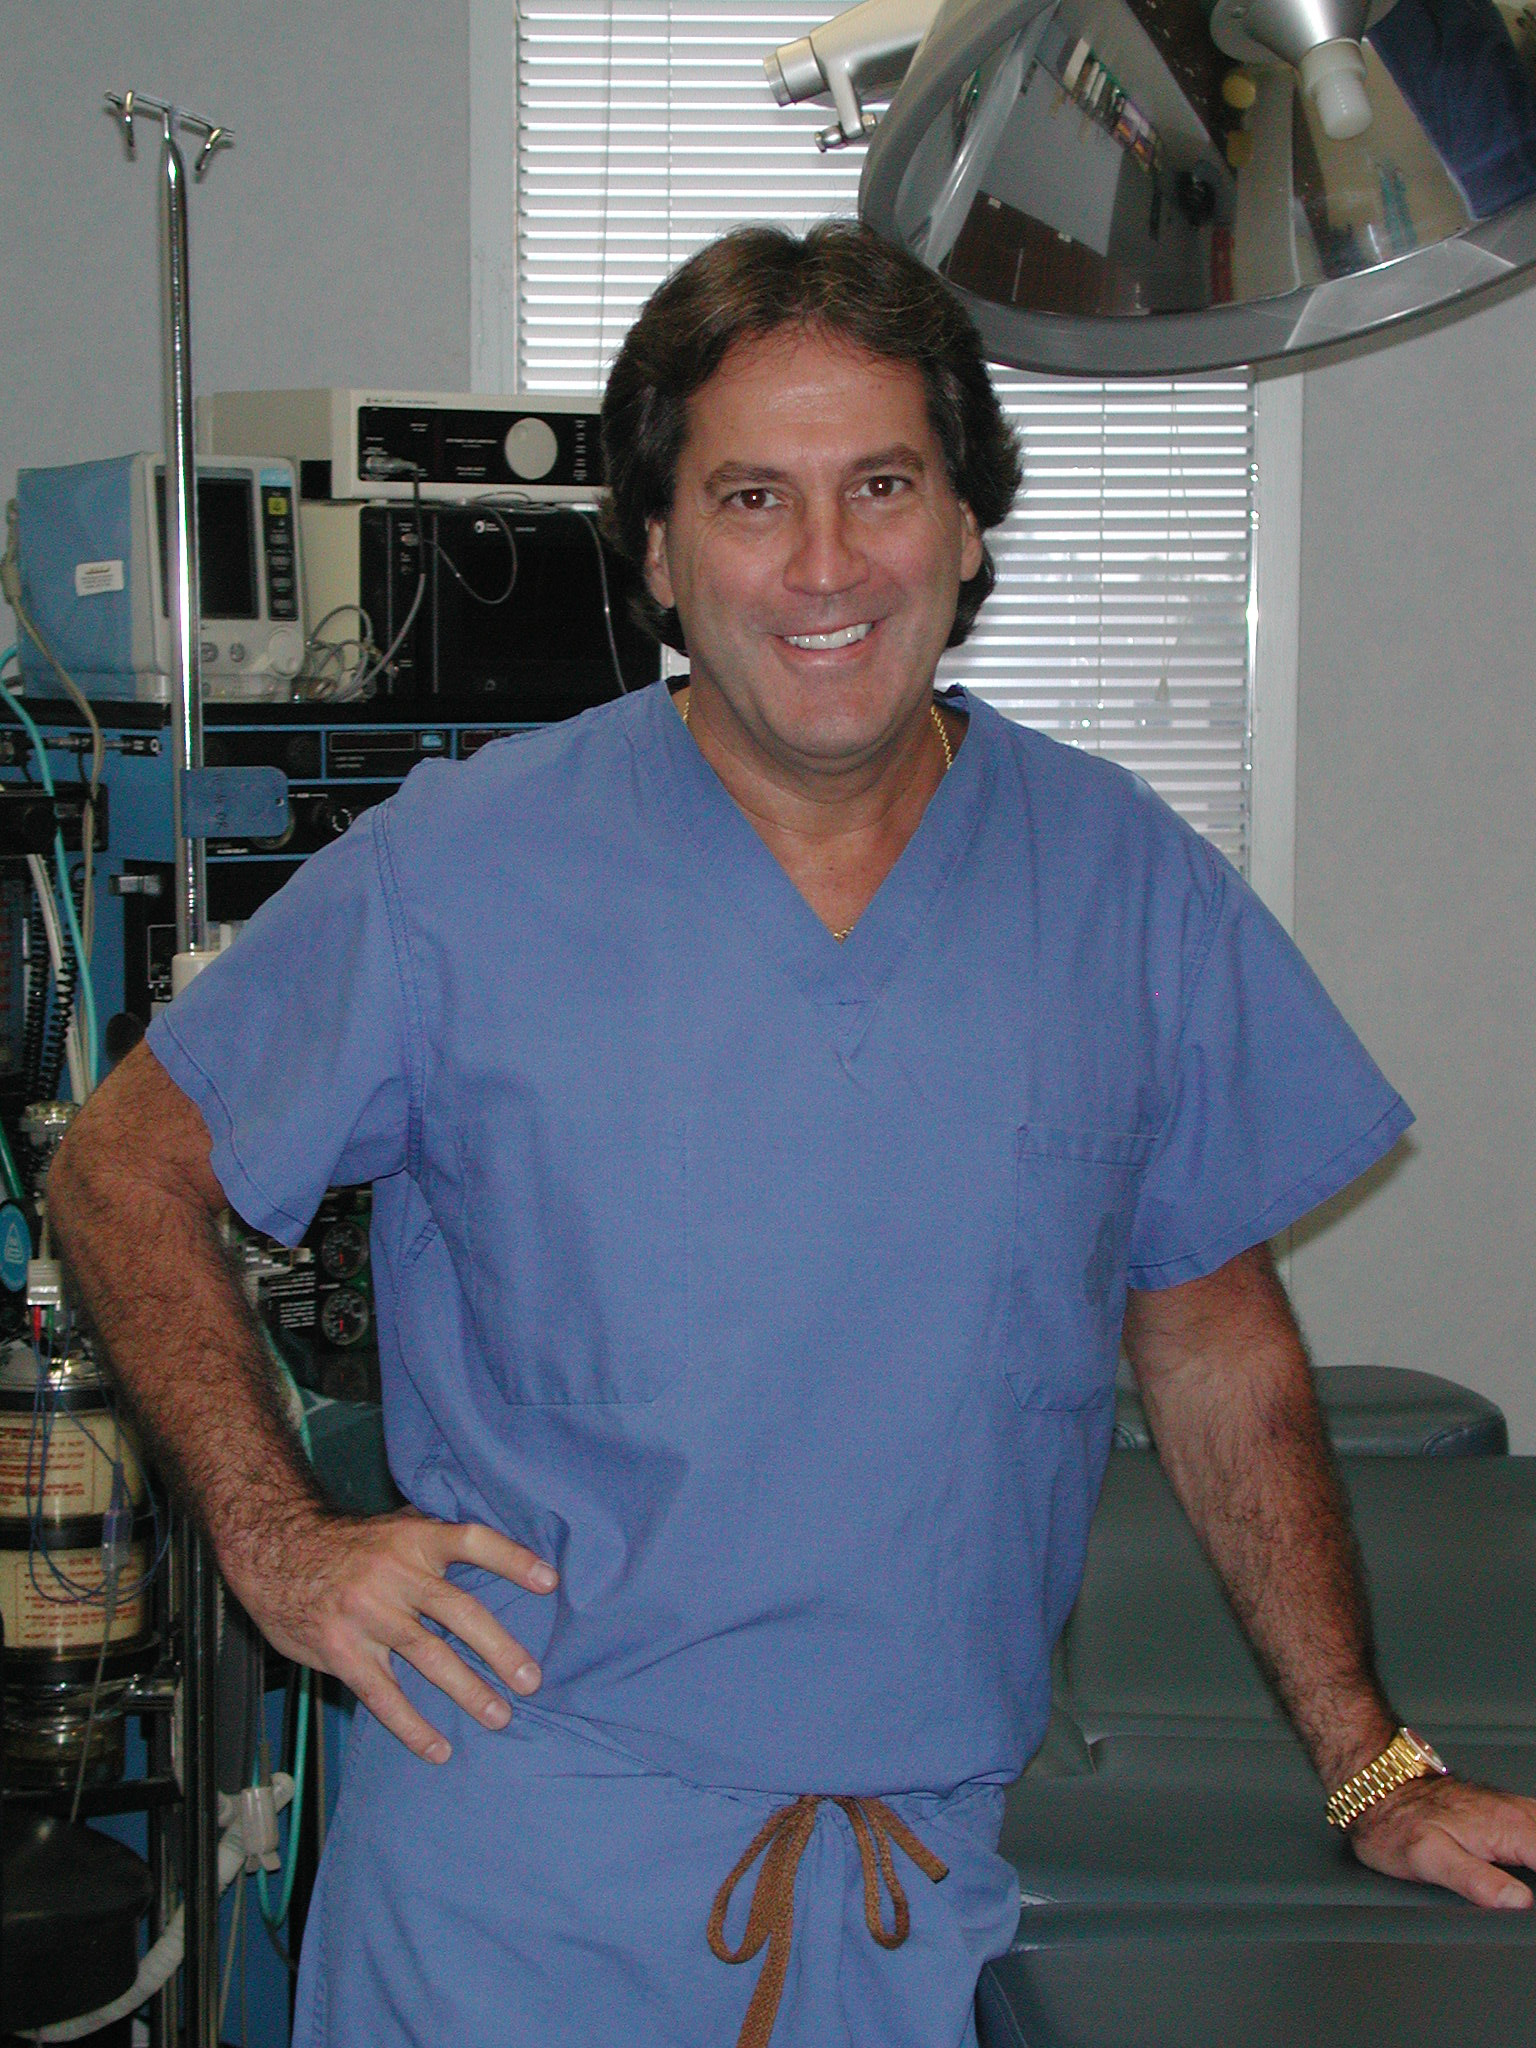 Dr. Daniel Casper in Scrubs